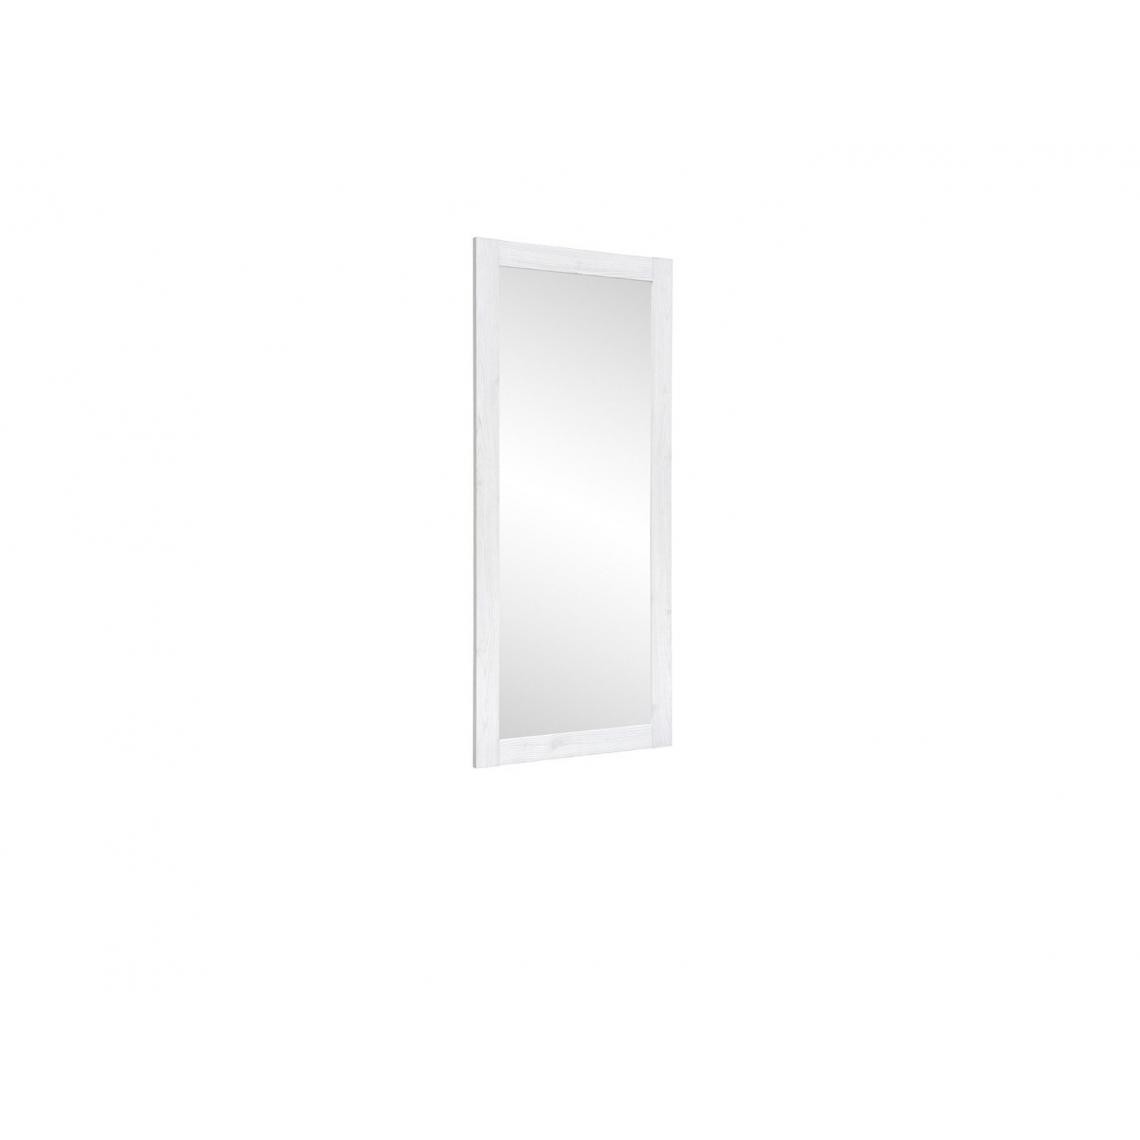 Hucoco - PORTOS - Miroir pour salon chambre couloir - Style scandinave - 116 x 51 x 2 cm - Bordure simple - Grand miroir - Blanc - Miroirs